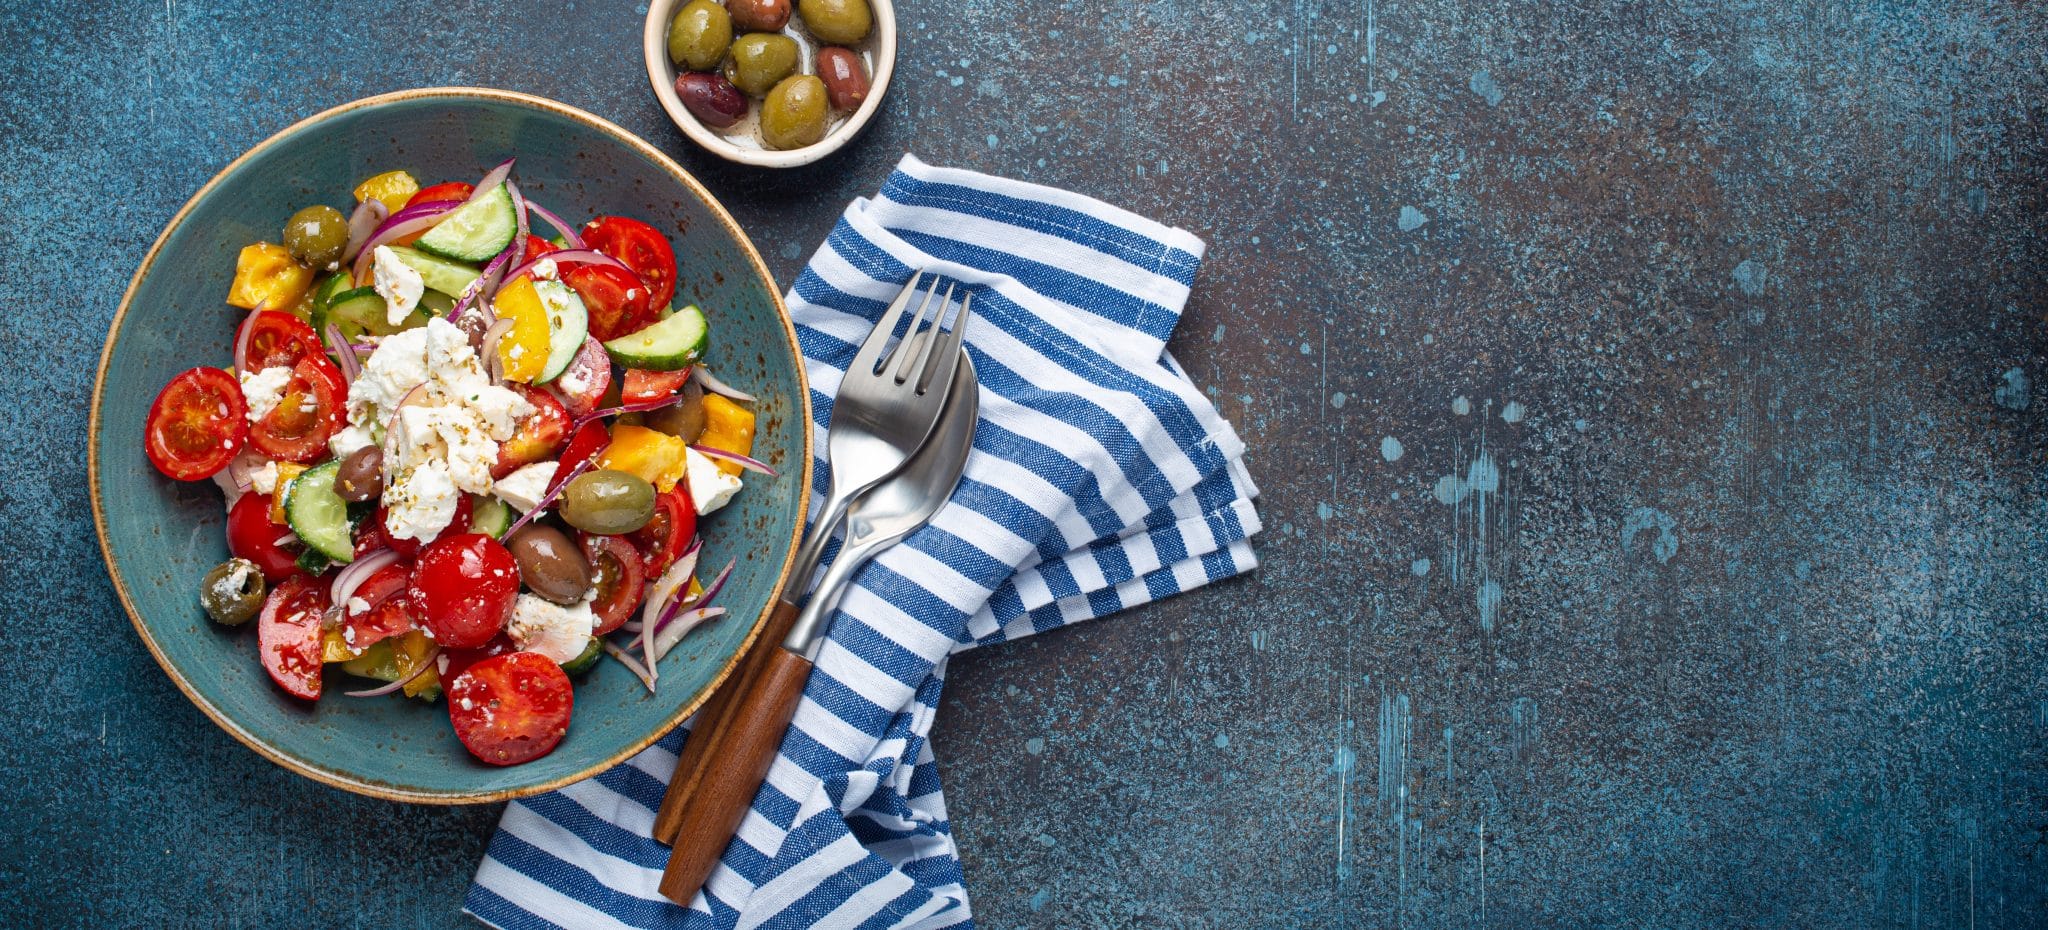 Teller mit griechischem Salat mit Feta-Köse und buntem Gemüse, daneben ein kleiner Teller Oliven und eine blau-weiß-gestreifte Serviette, auf der eine Gabel und ein Löffel liegen.